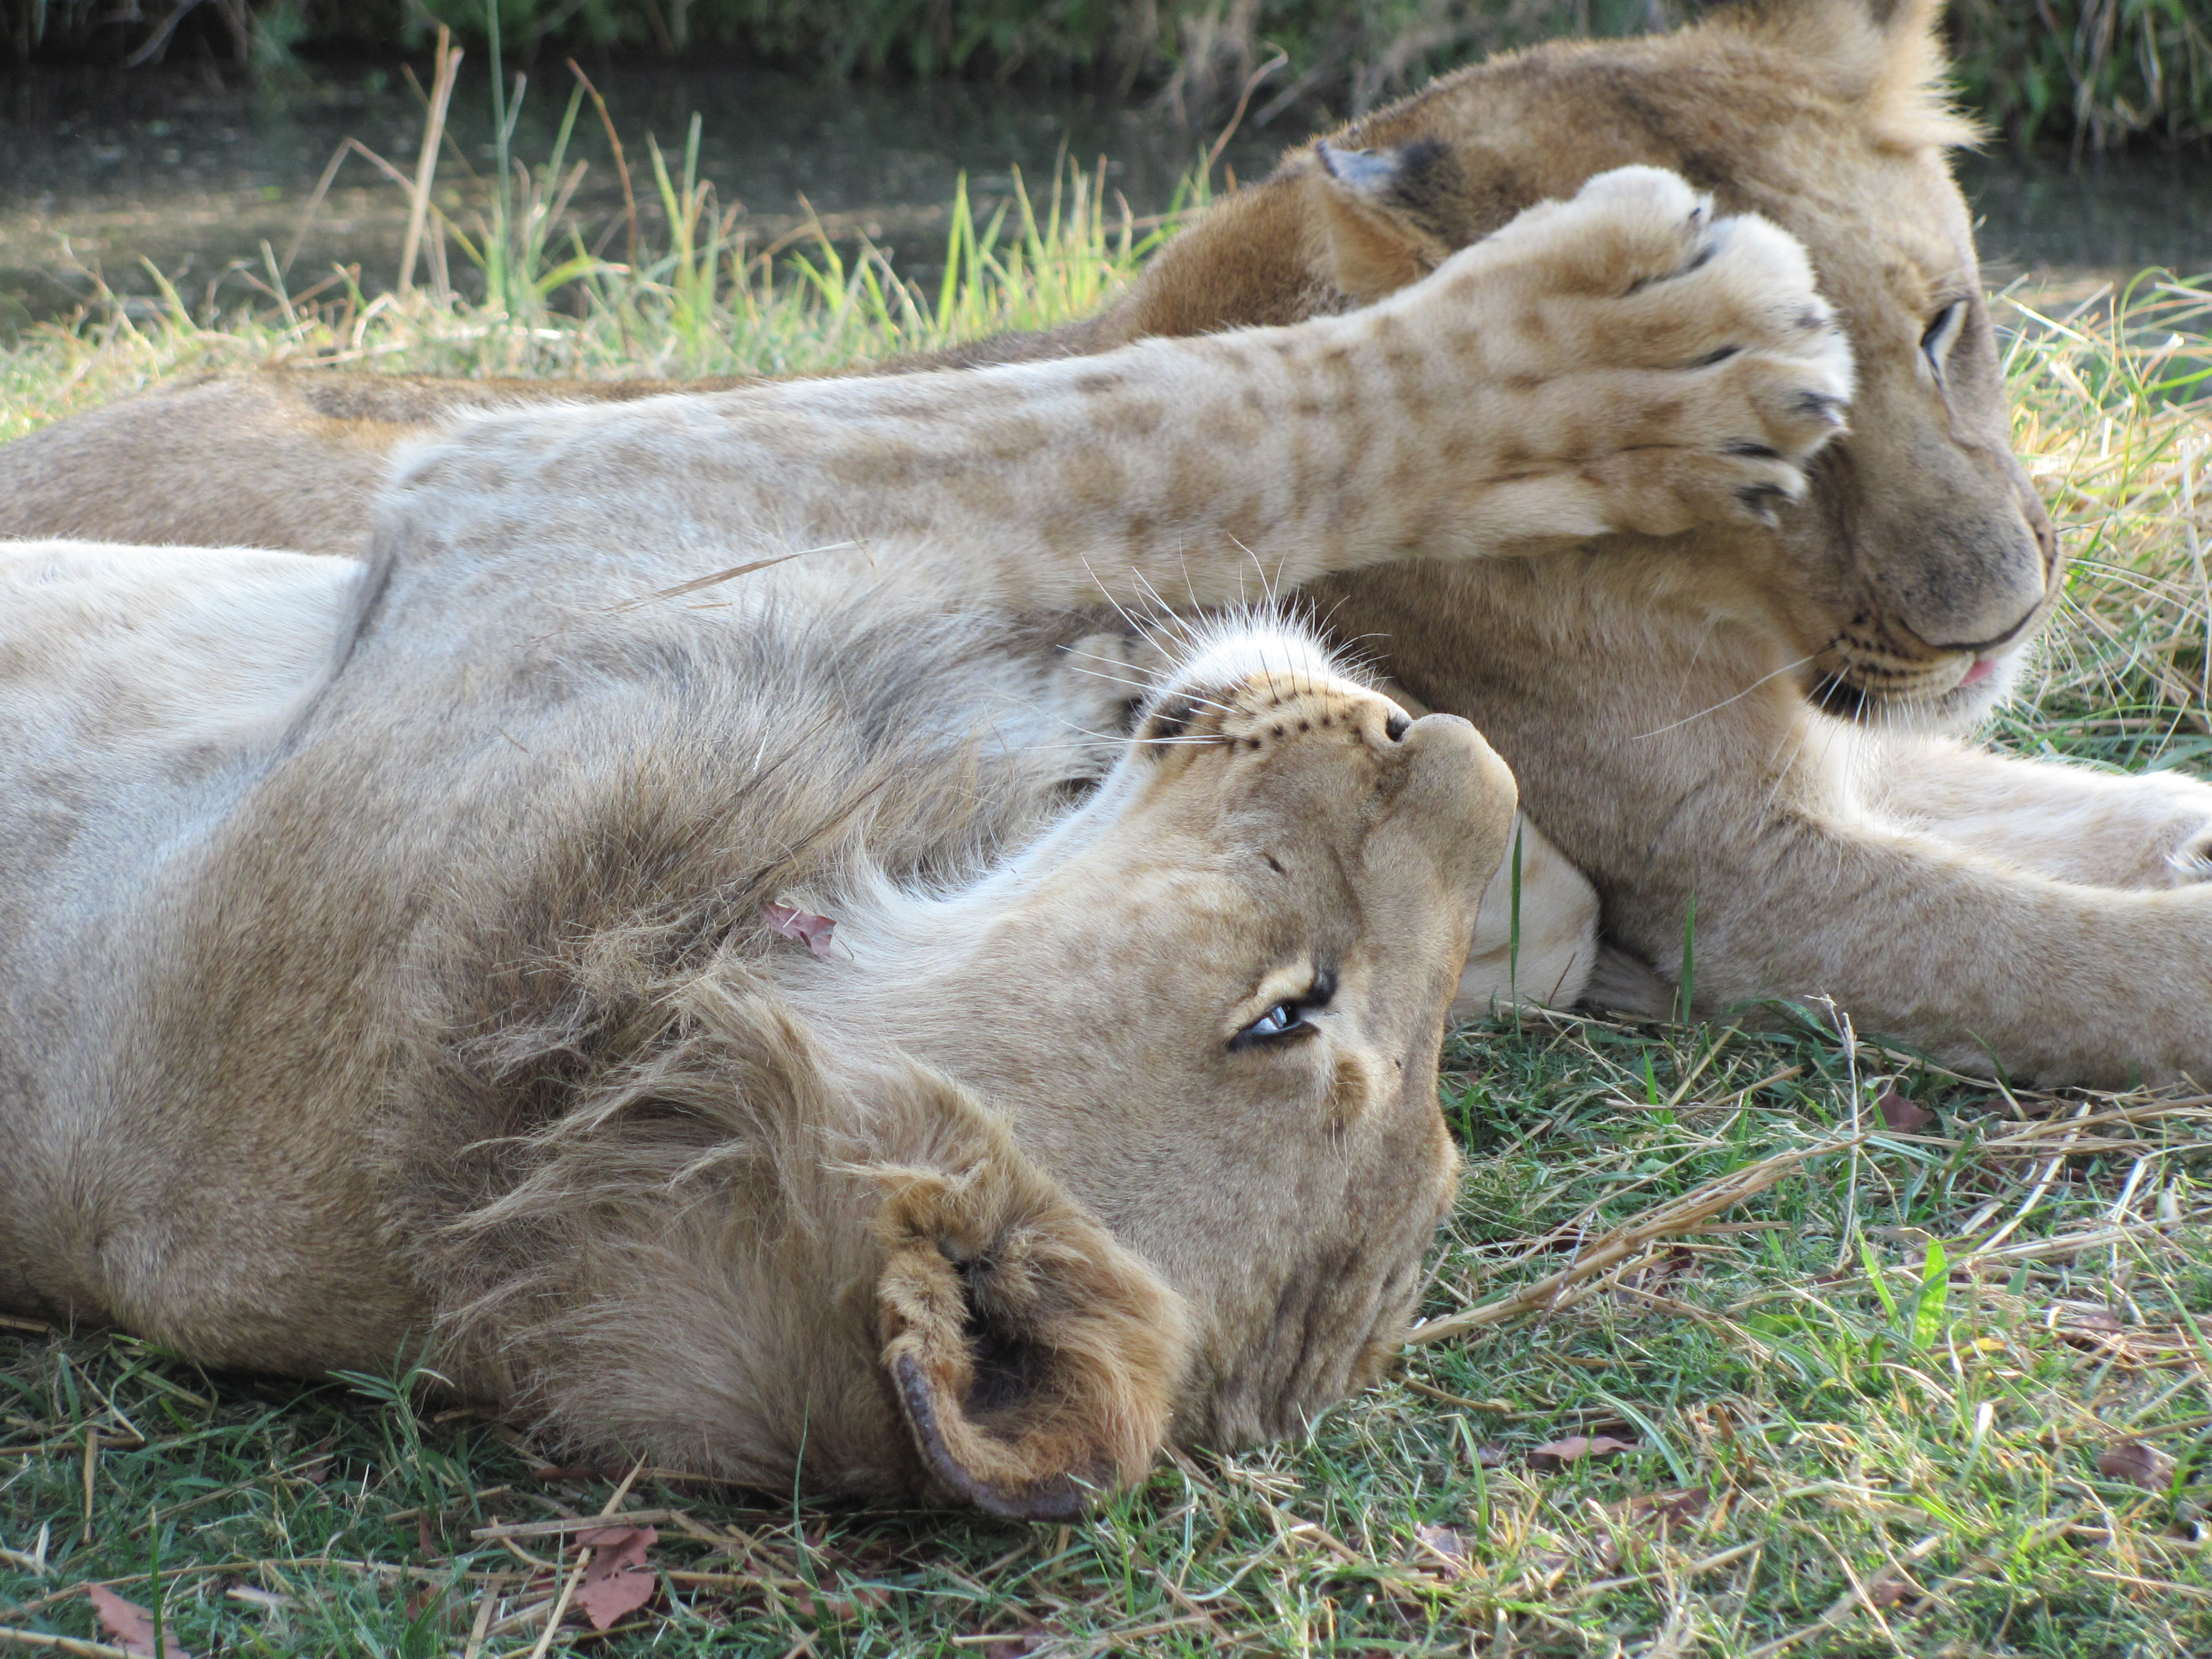 Löwen ganz nah - Simones Foto vom Wildlife Abenteuer in Simbabwe